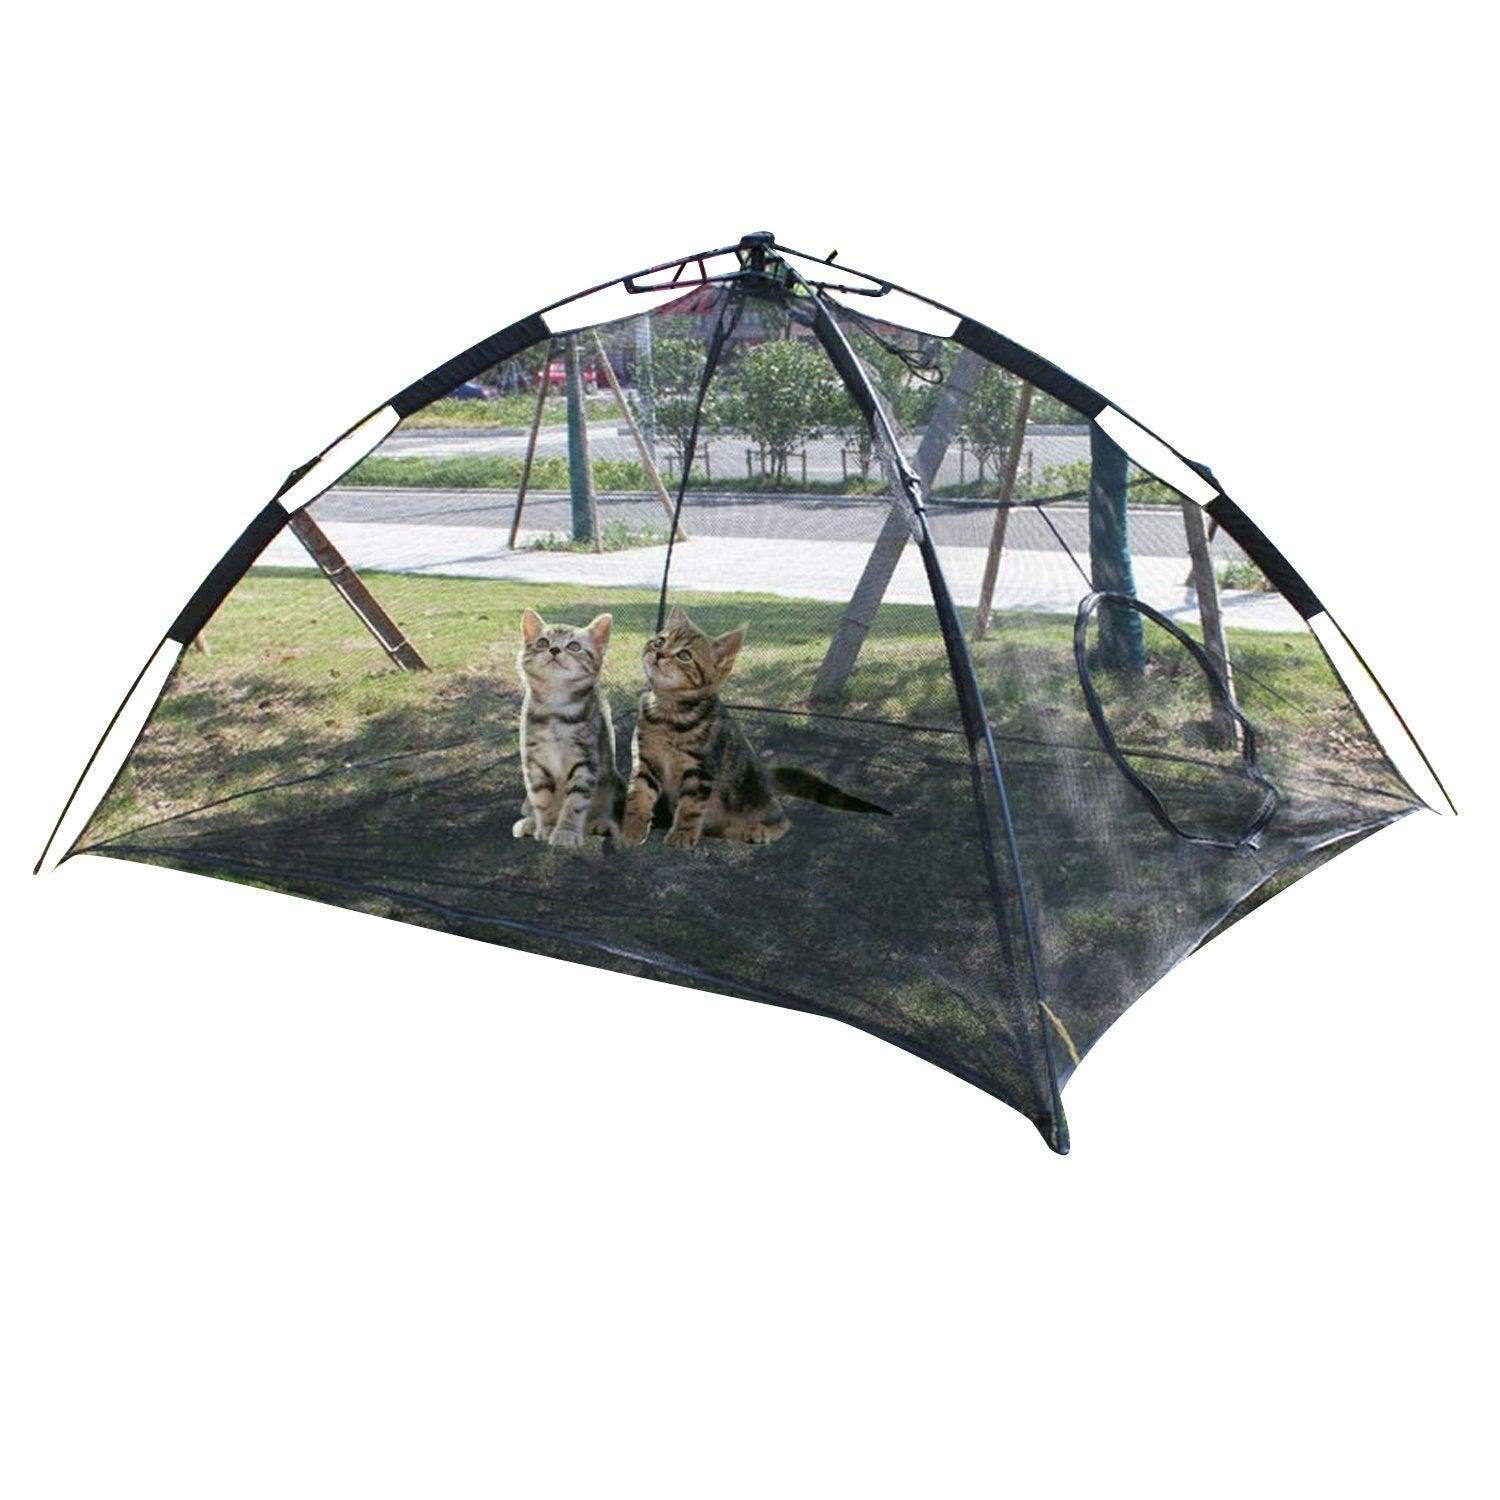 Outdoor Pop Up Cat Tent Enclosure